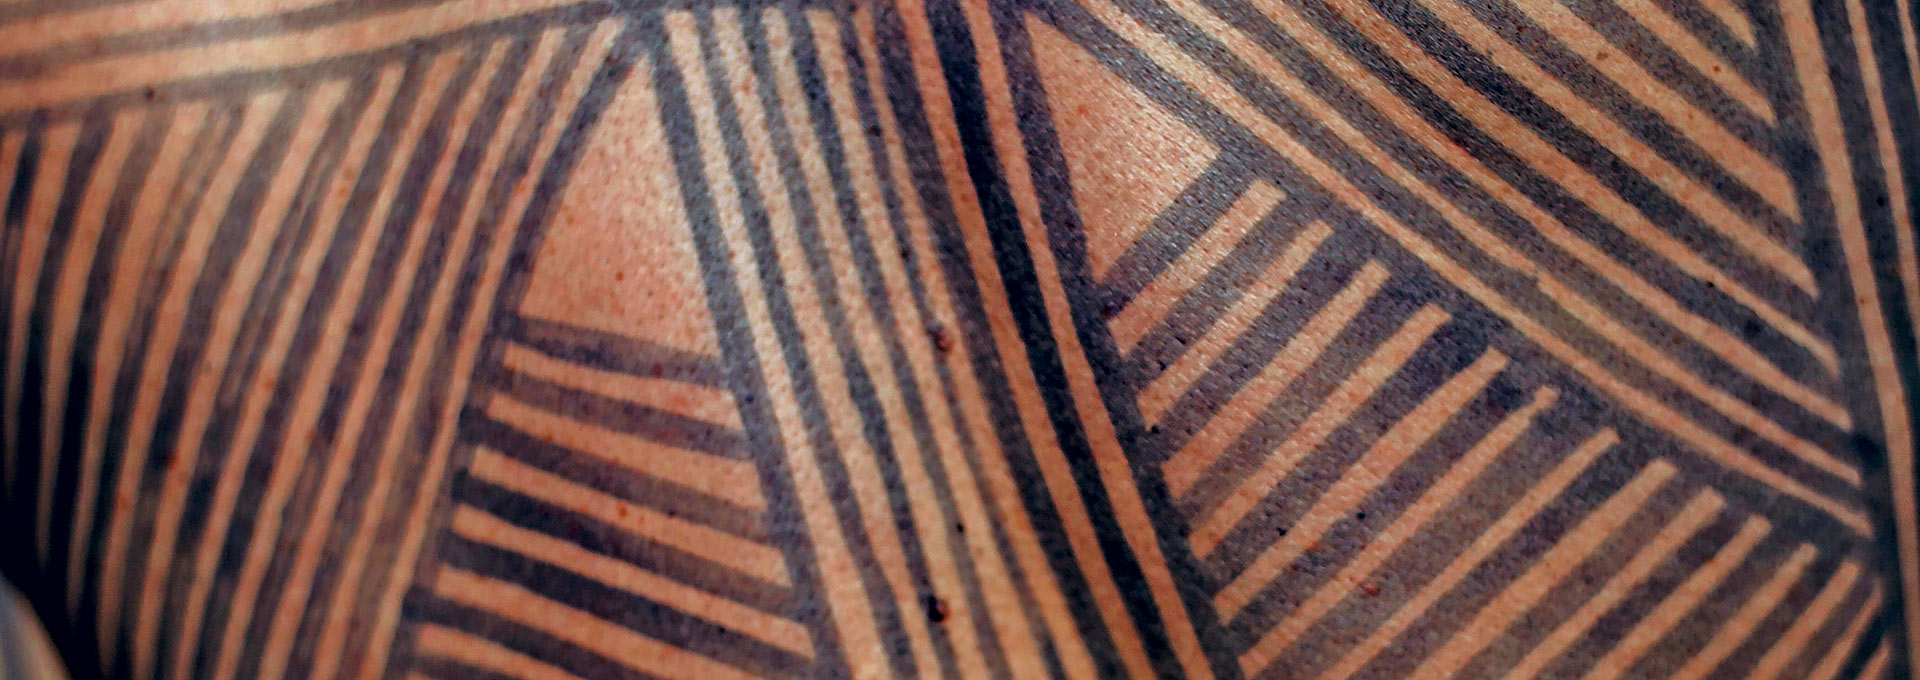 Audiodescrição: Em imagem close-up e frontal, pintura indígena brasileira feita na pele de uma pessoa com uso de tinta preta e elaborada com traços verticais e na diagonal, unidos, como que formando triângulos. Imagem 1 de 1.